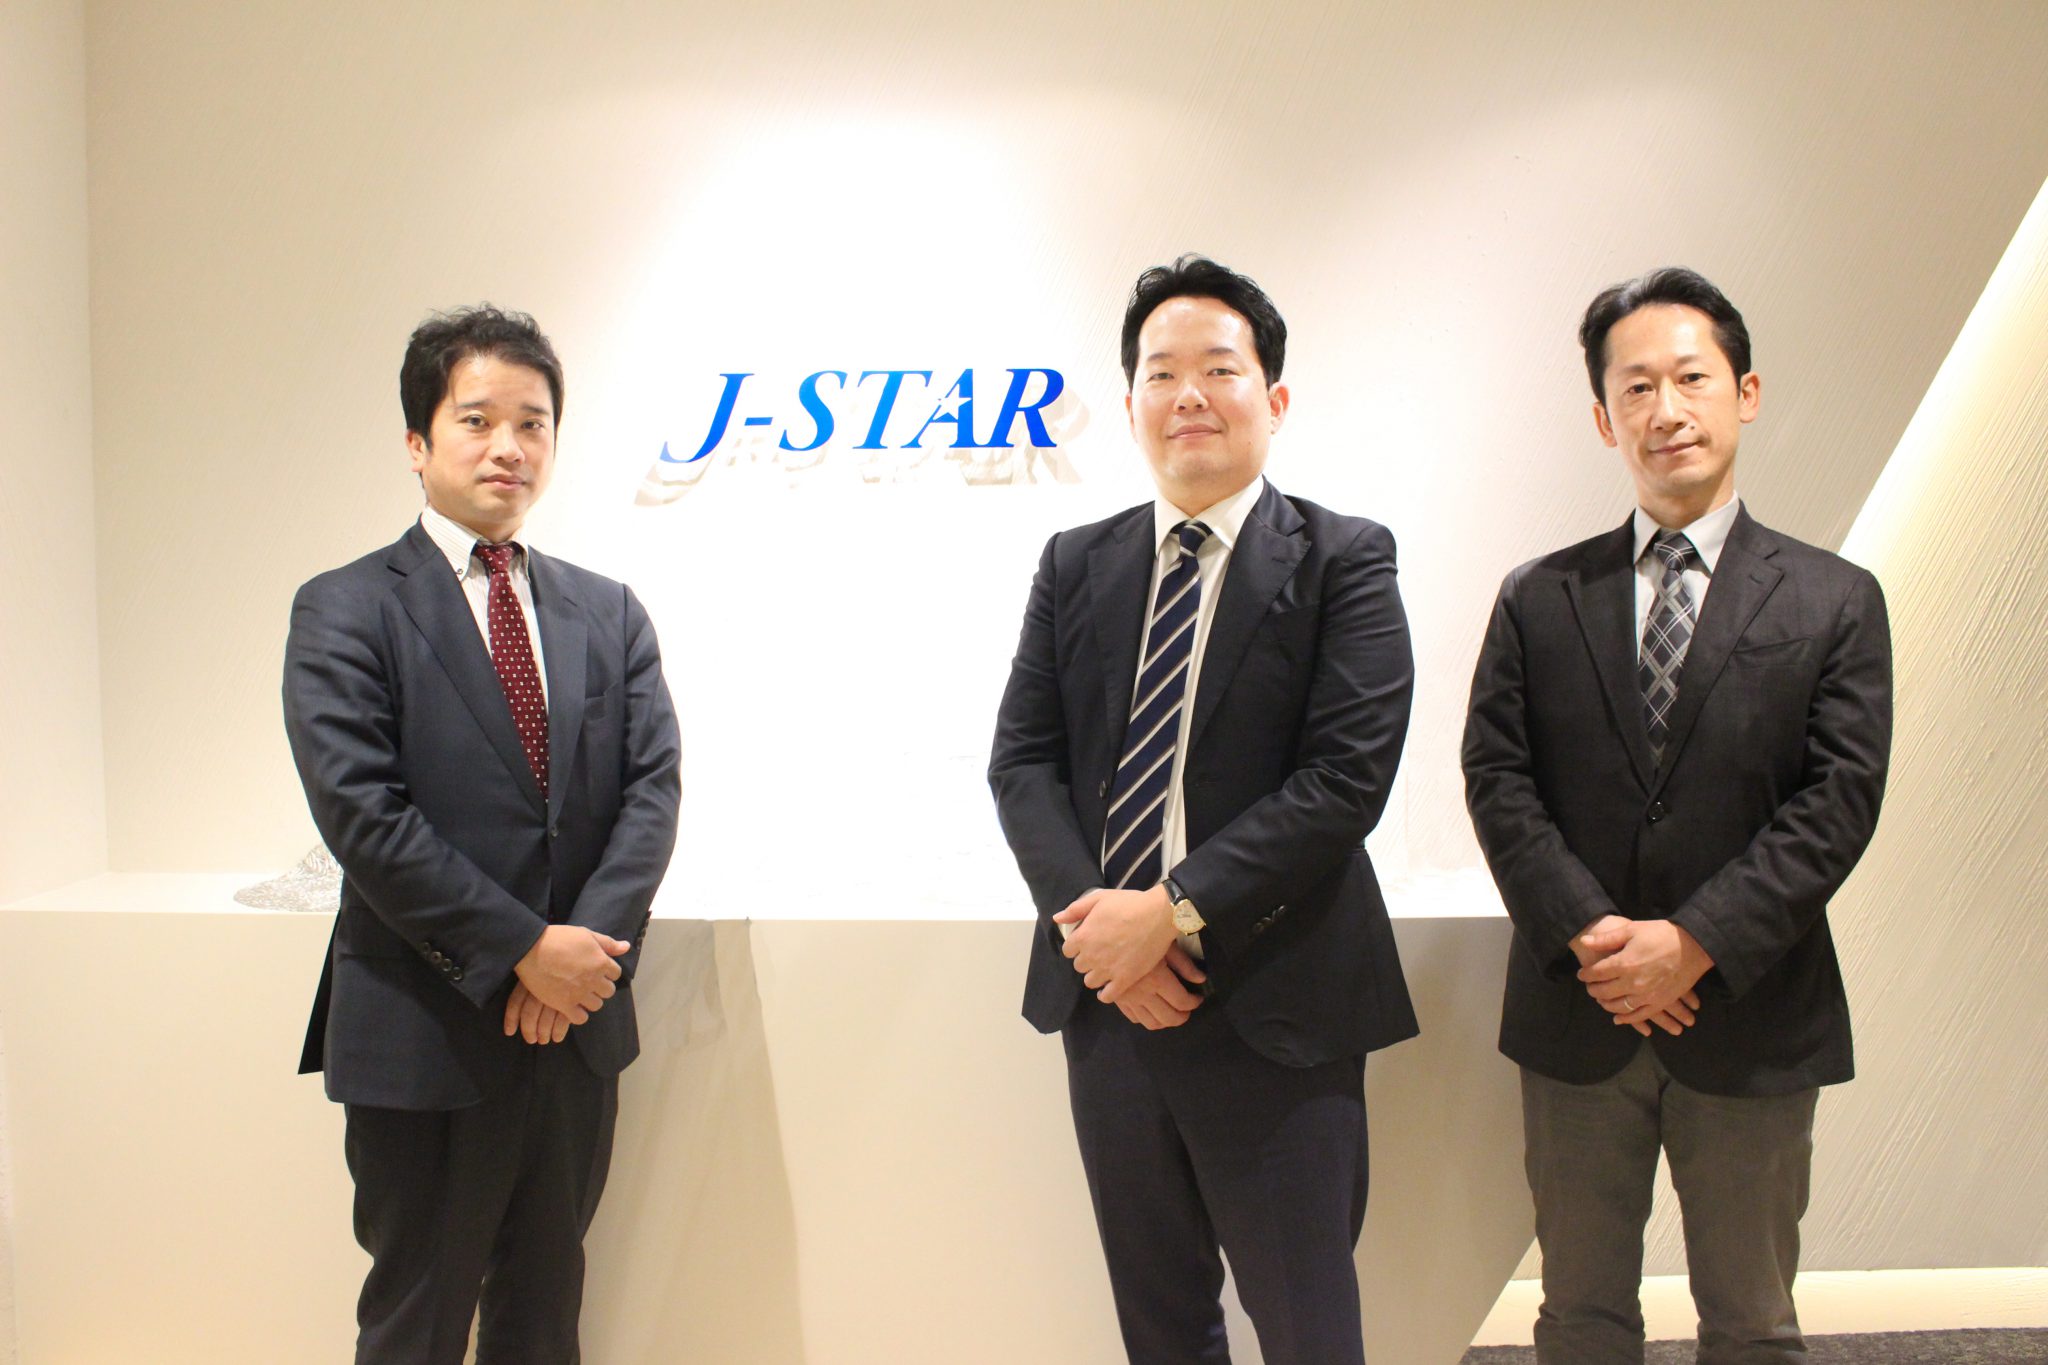 中堅・中小企業への投資に特化するJ-STARがCxO候補として求める人物像に迫る/ J-STAR株式会社 樫山様、野田様